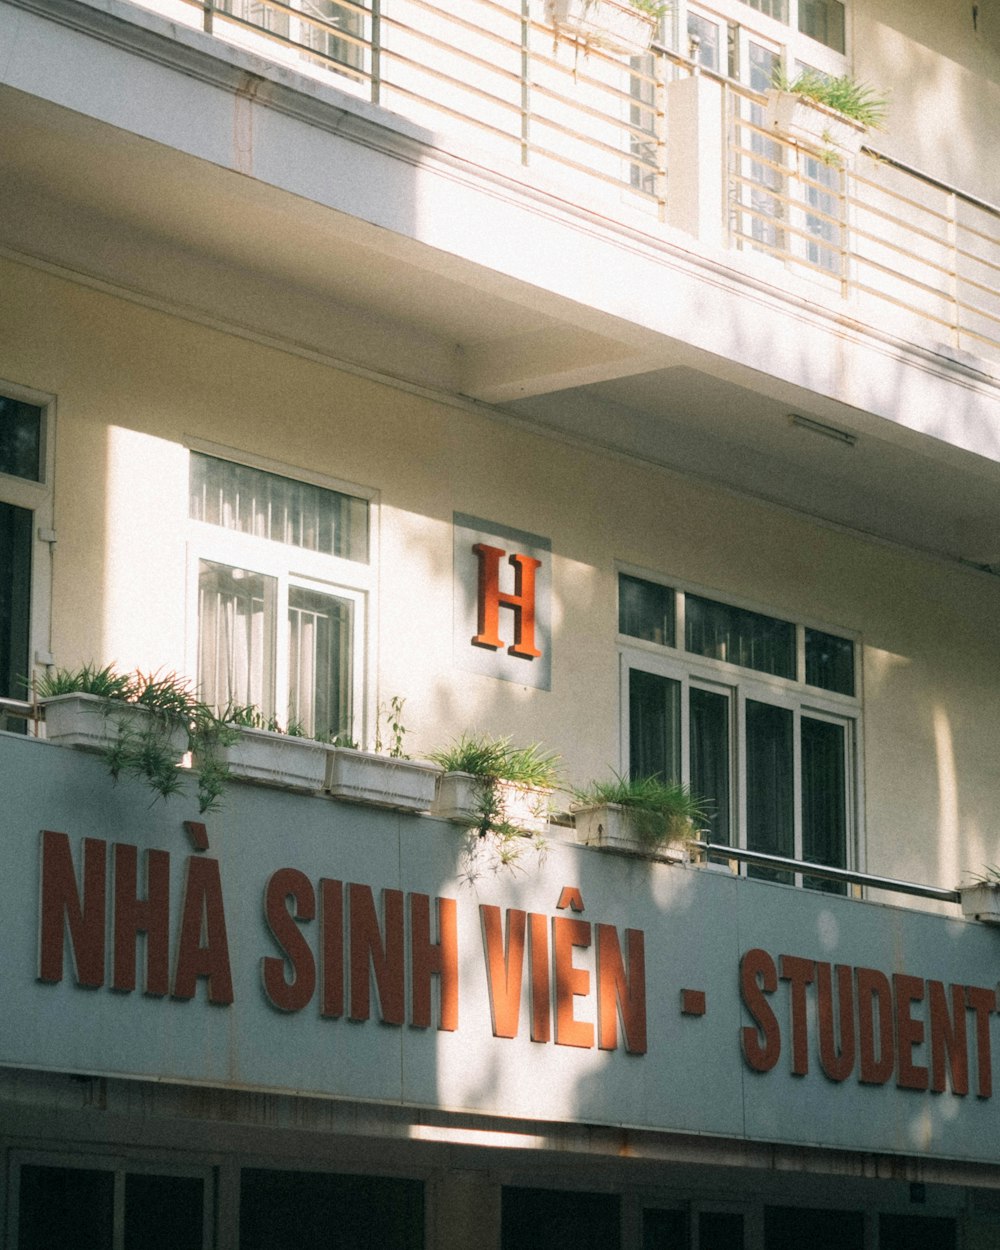 Ein Gebäude mit einem Schild mit der Aufschrift Niha Sinnwein - Studentin